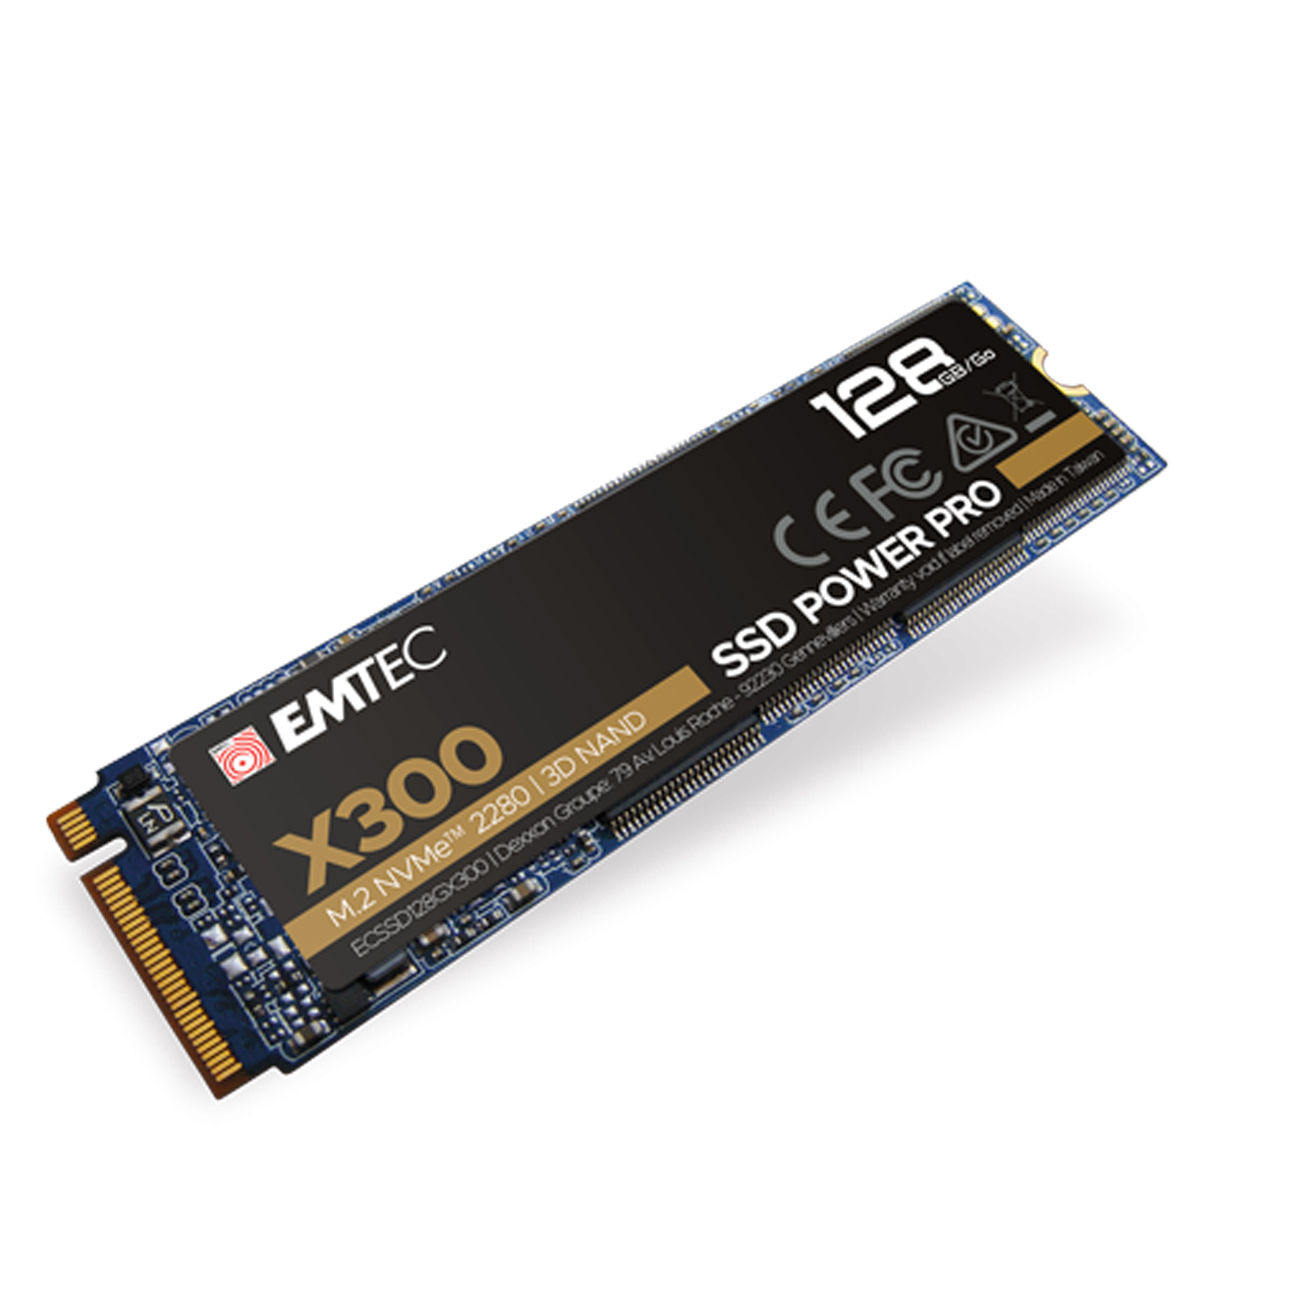 EMTEC SSD 128GB M.2 PCIE X300 NVME M2 2280 - ECSSD128GX300